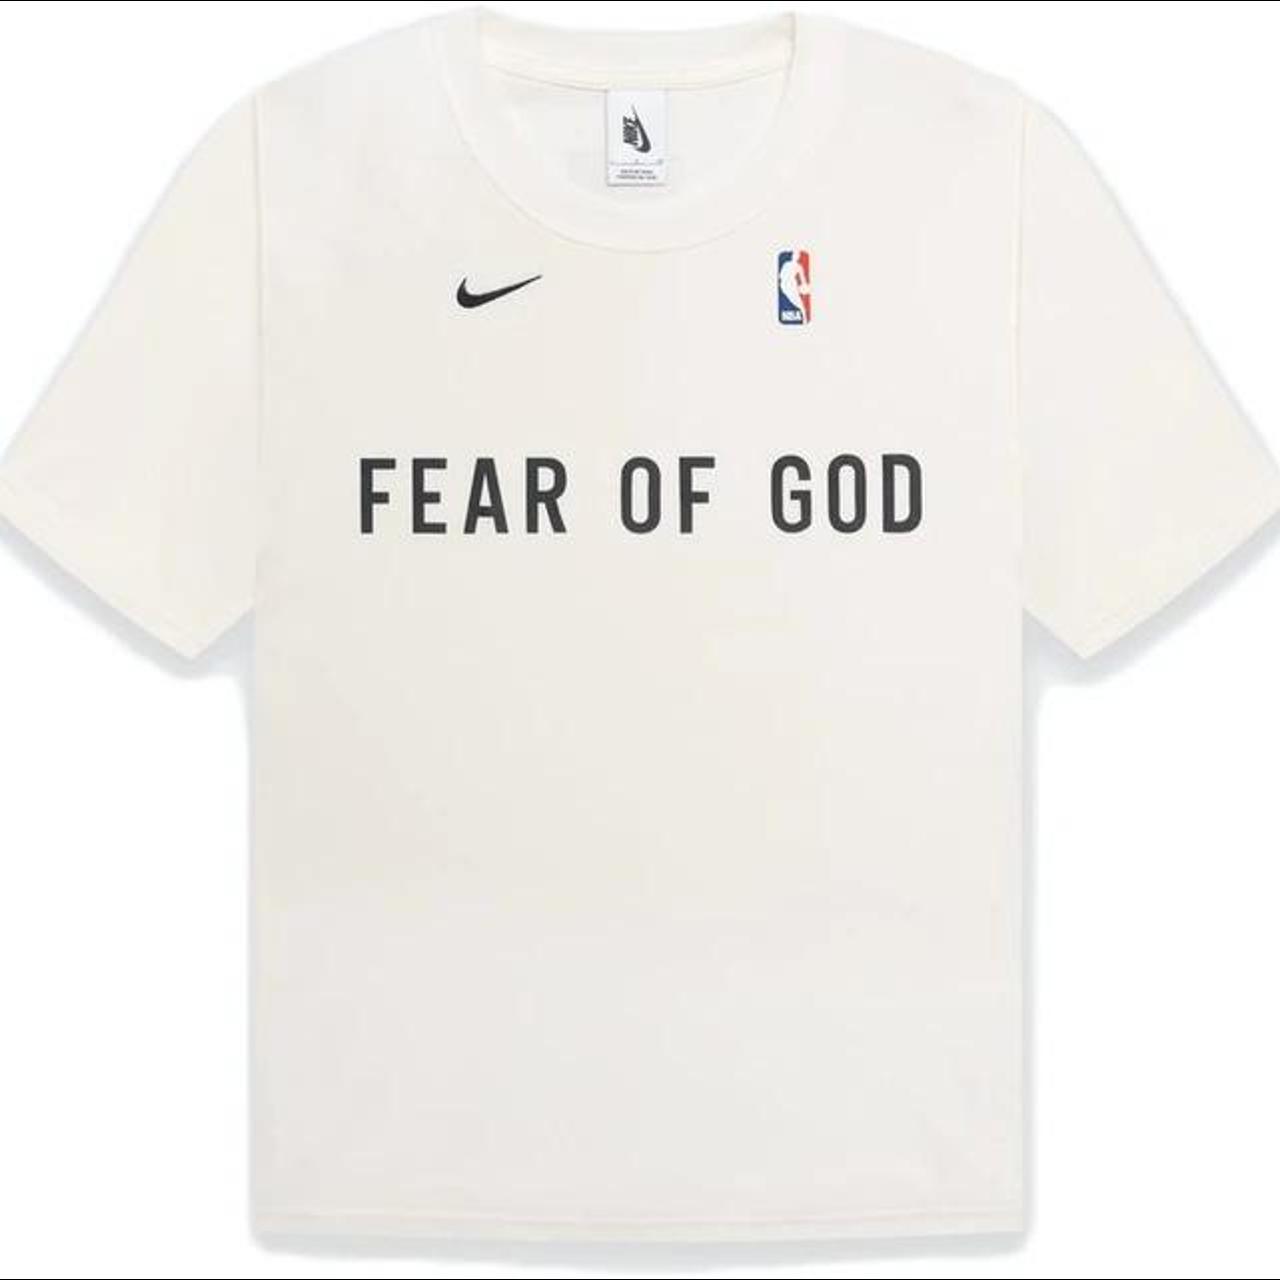 Fear of God x Nike Warm Up T-shirt - MEDIUM #fog... - Depop